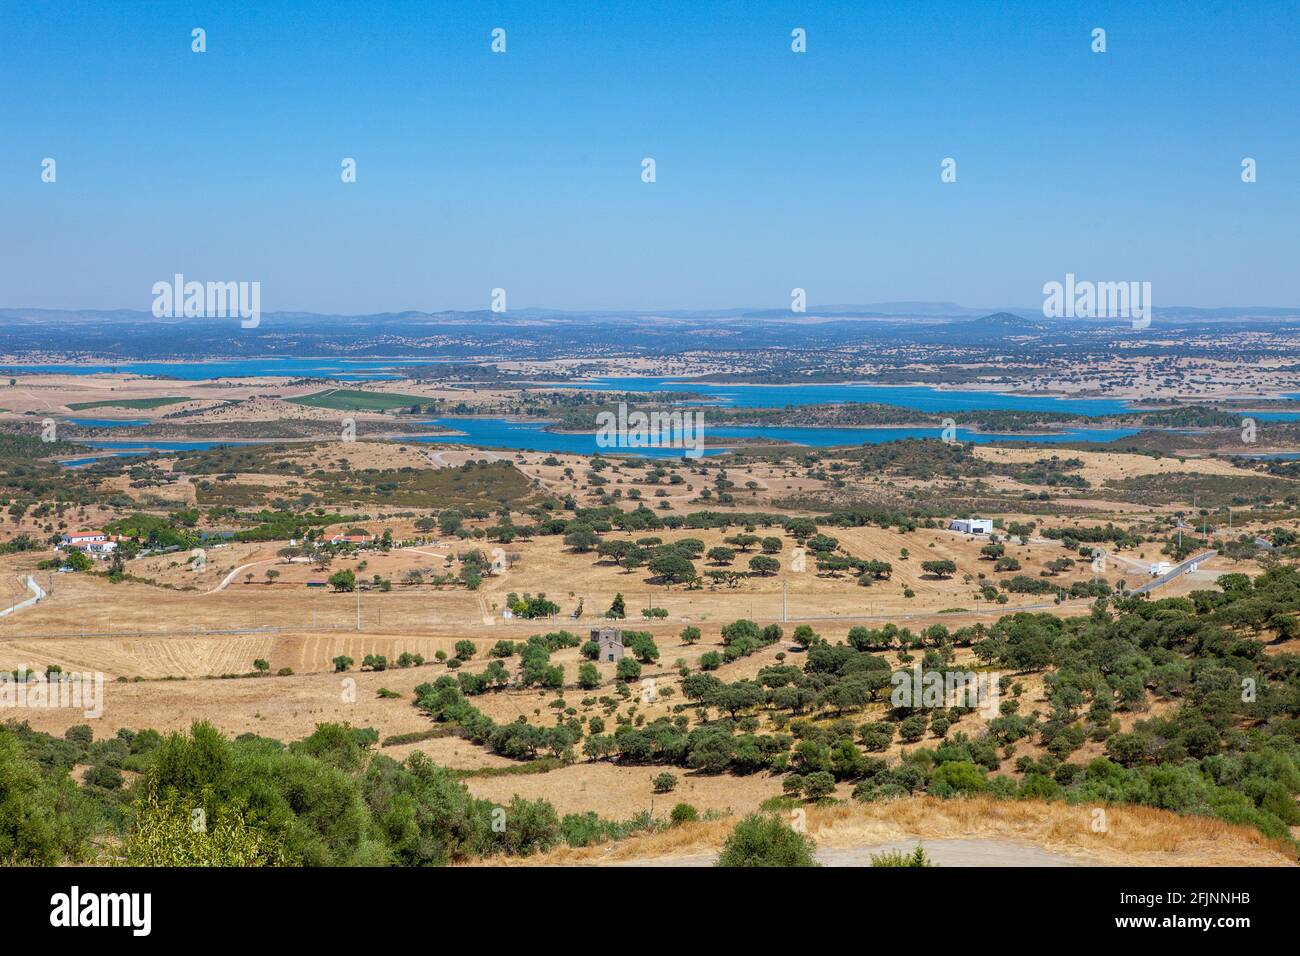 Vista sulla diga di Alqueva, il più grande lago artificiale d'Europa, vista dal villaggio collinare di Monsaraz nella regione dell'Alentejo, in Portogallo Foto Stock